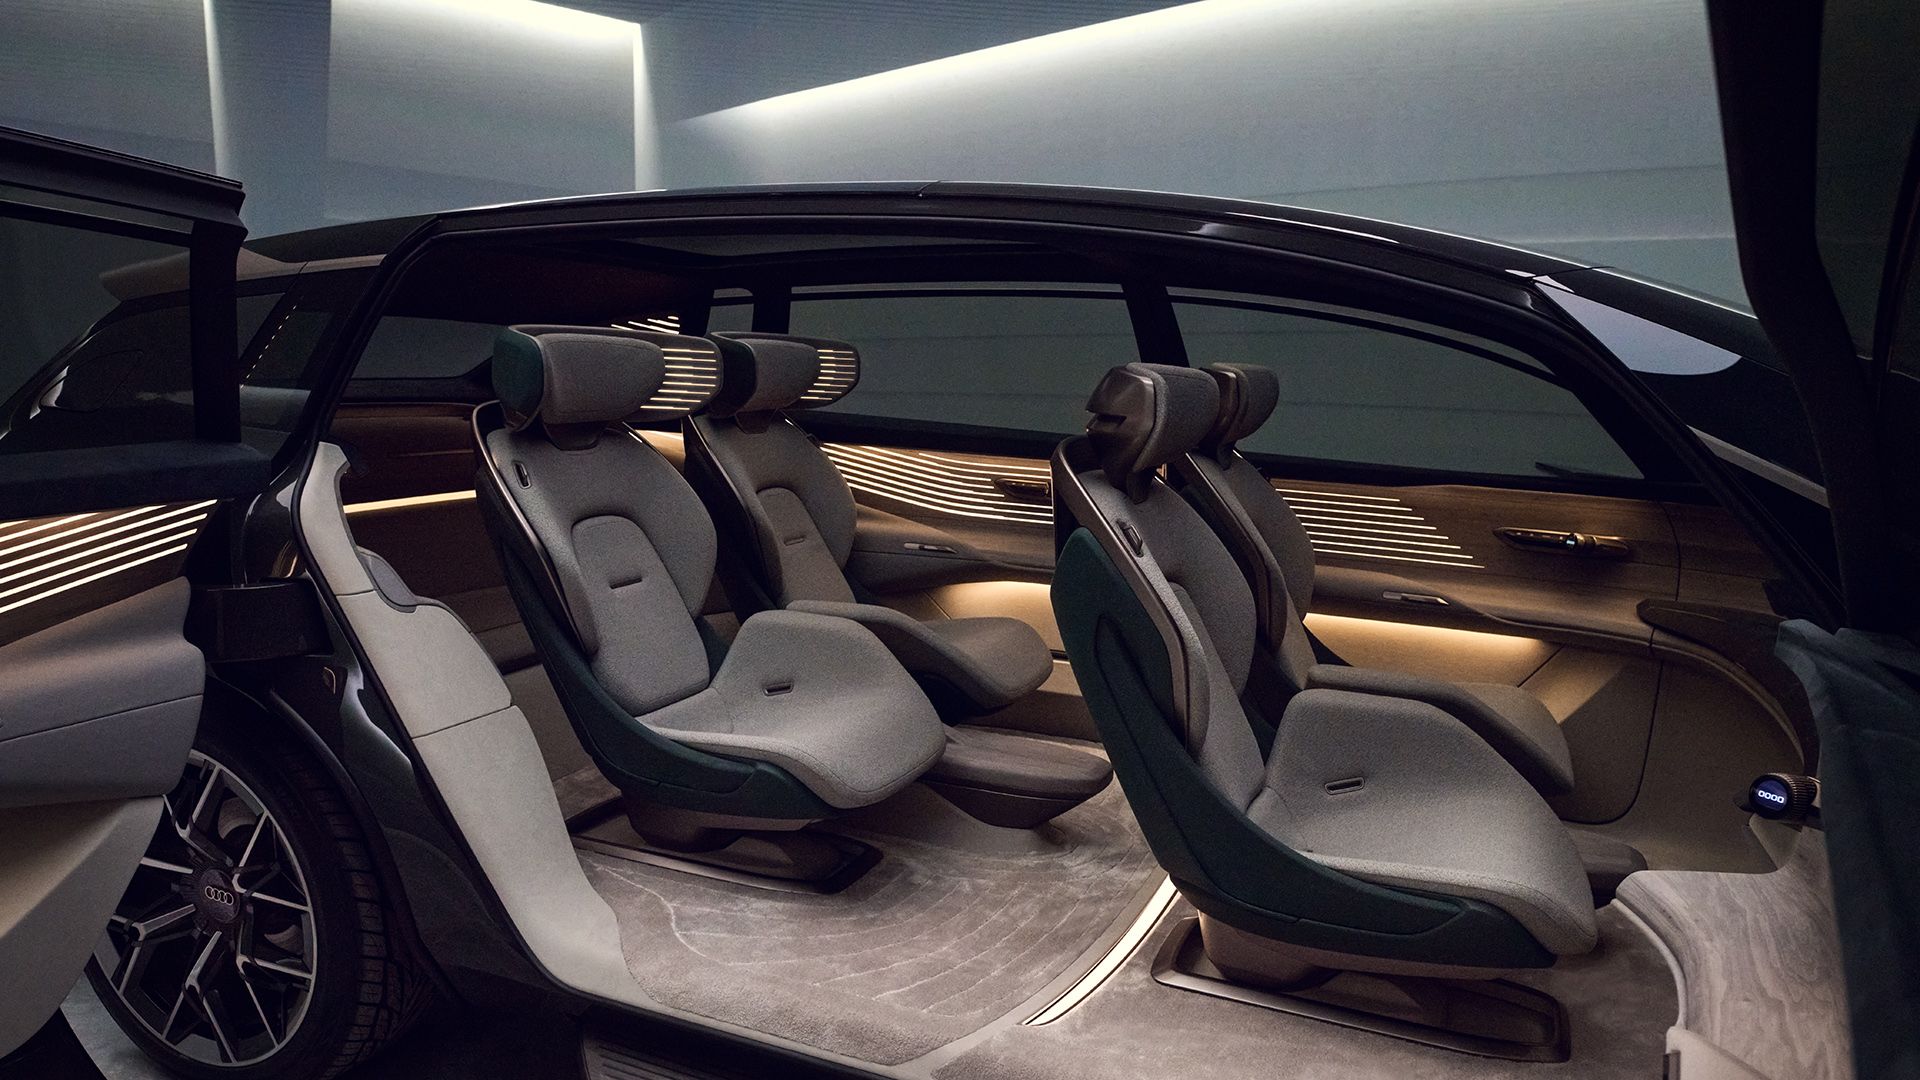 Ein Blick in den Innenraum des Audi urbansphere concept mit vier Einzelsitzen.